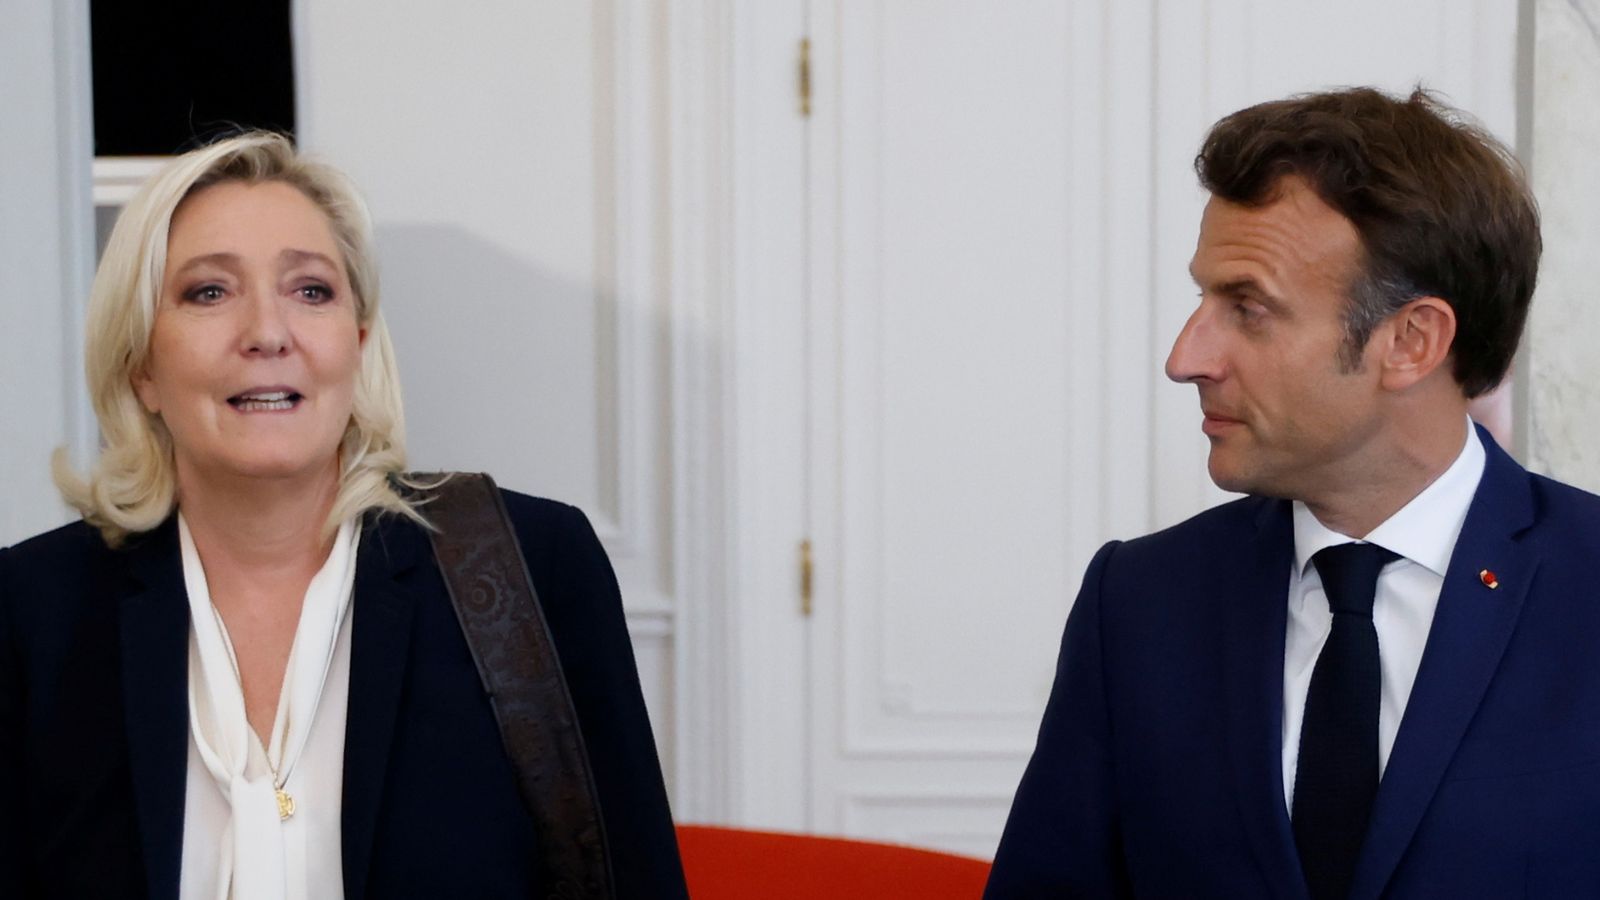 Wahlen in Frankreich: Marine Le Pen steht kurz vor der Machtübernahme, während Emmanuel Macrons großes Wagnis offenbar scheitert |  Weltnachrichten